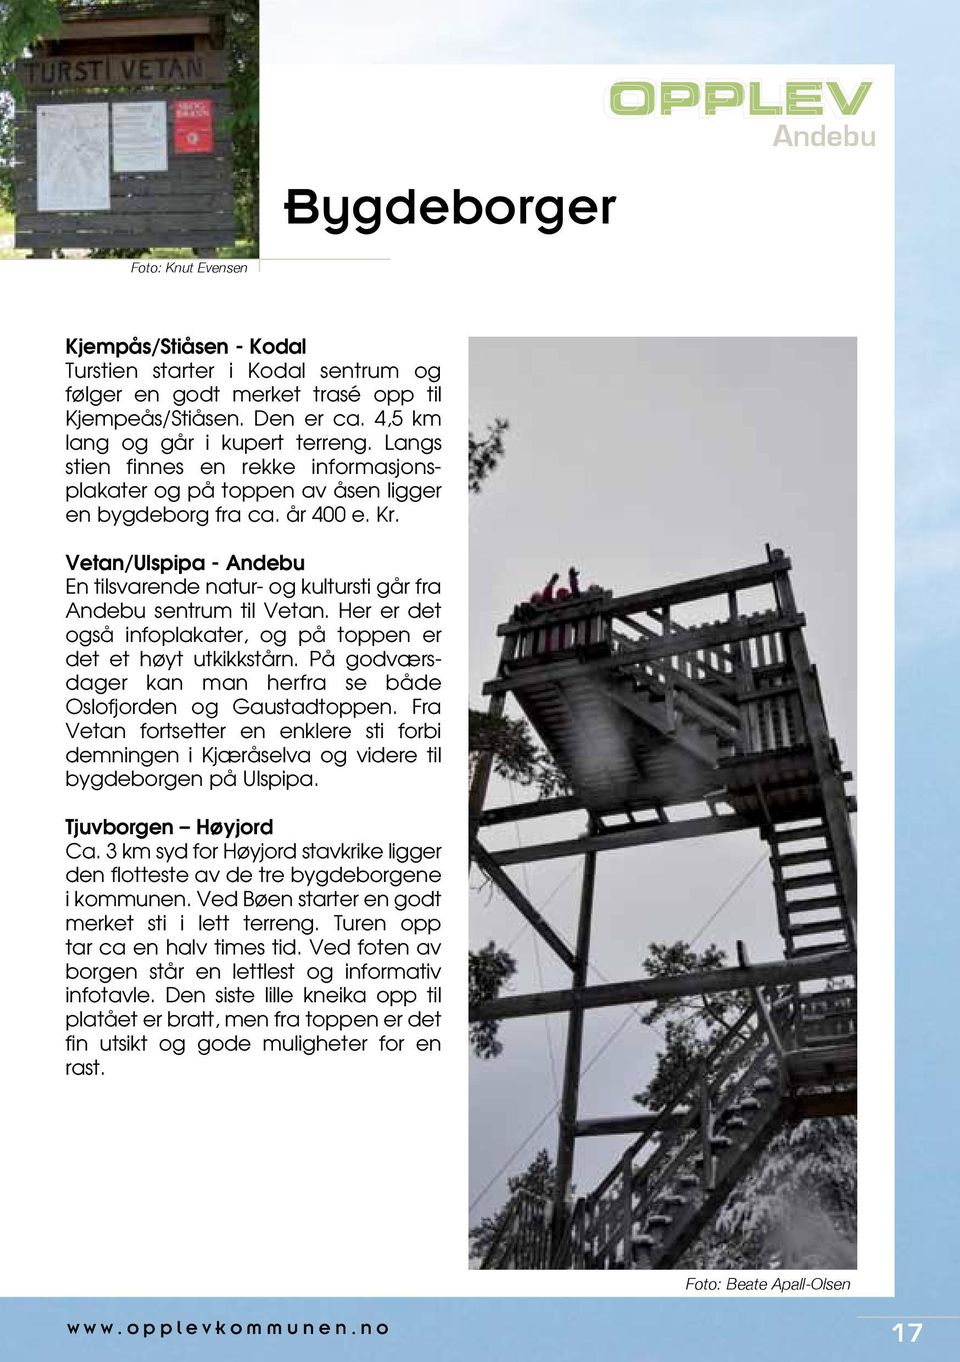 Her er det også infoplakater, og på toppen er det et høyt utkikkstårn. På godværsdager kan man herfra se både Oslofjorden og Gaustadtoppen.